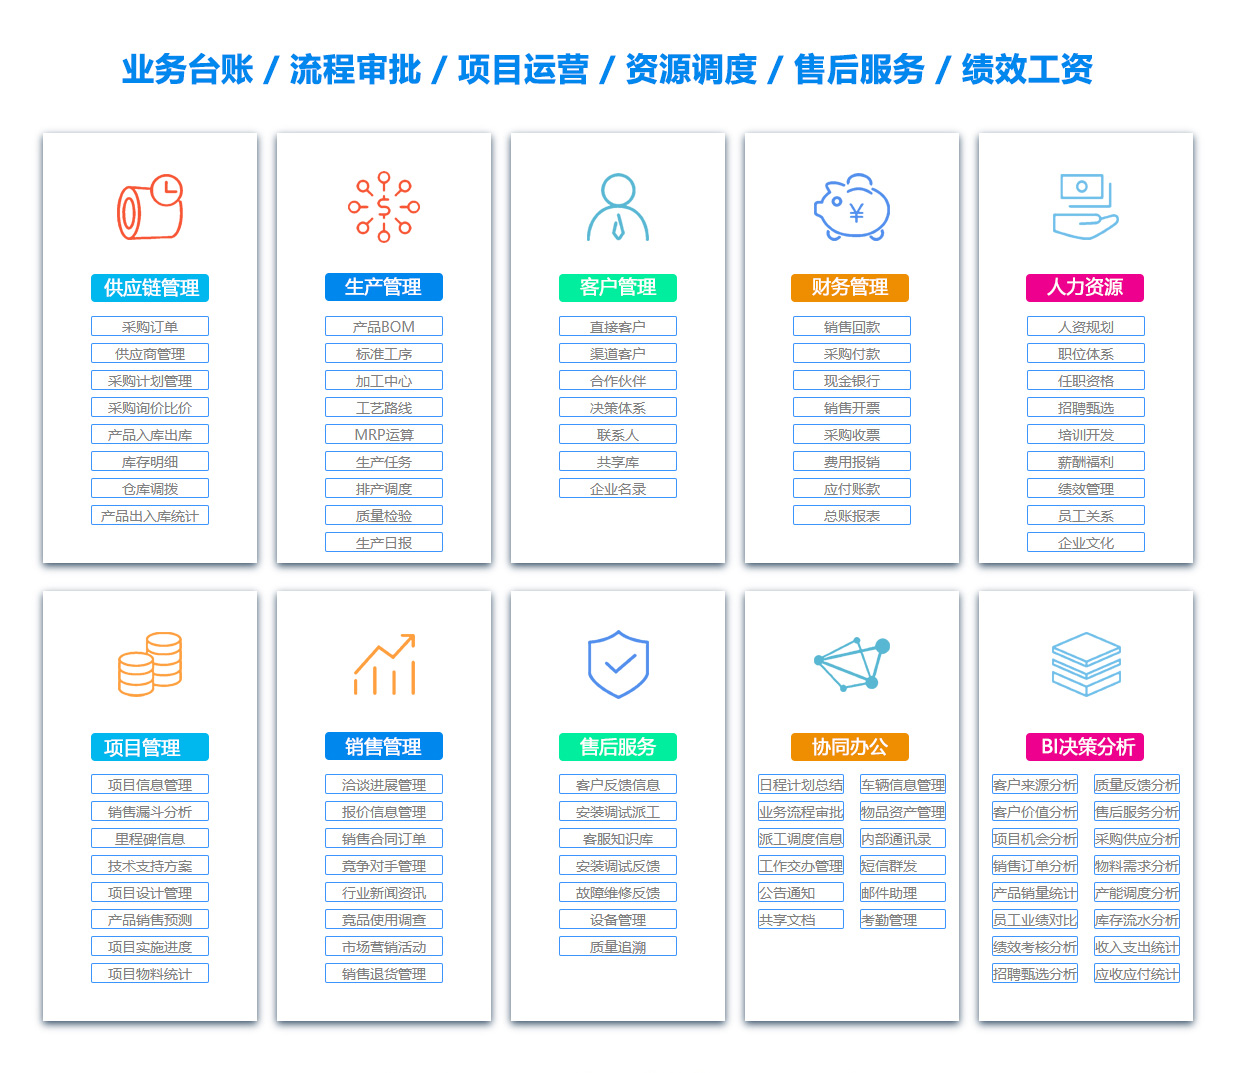 台州SCM:供应链管理系统